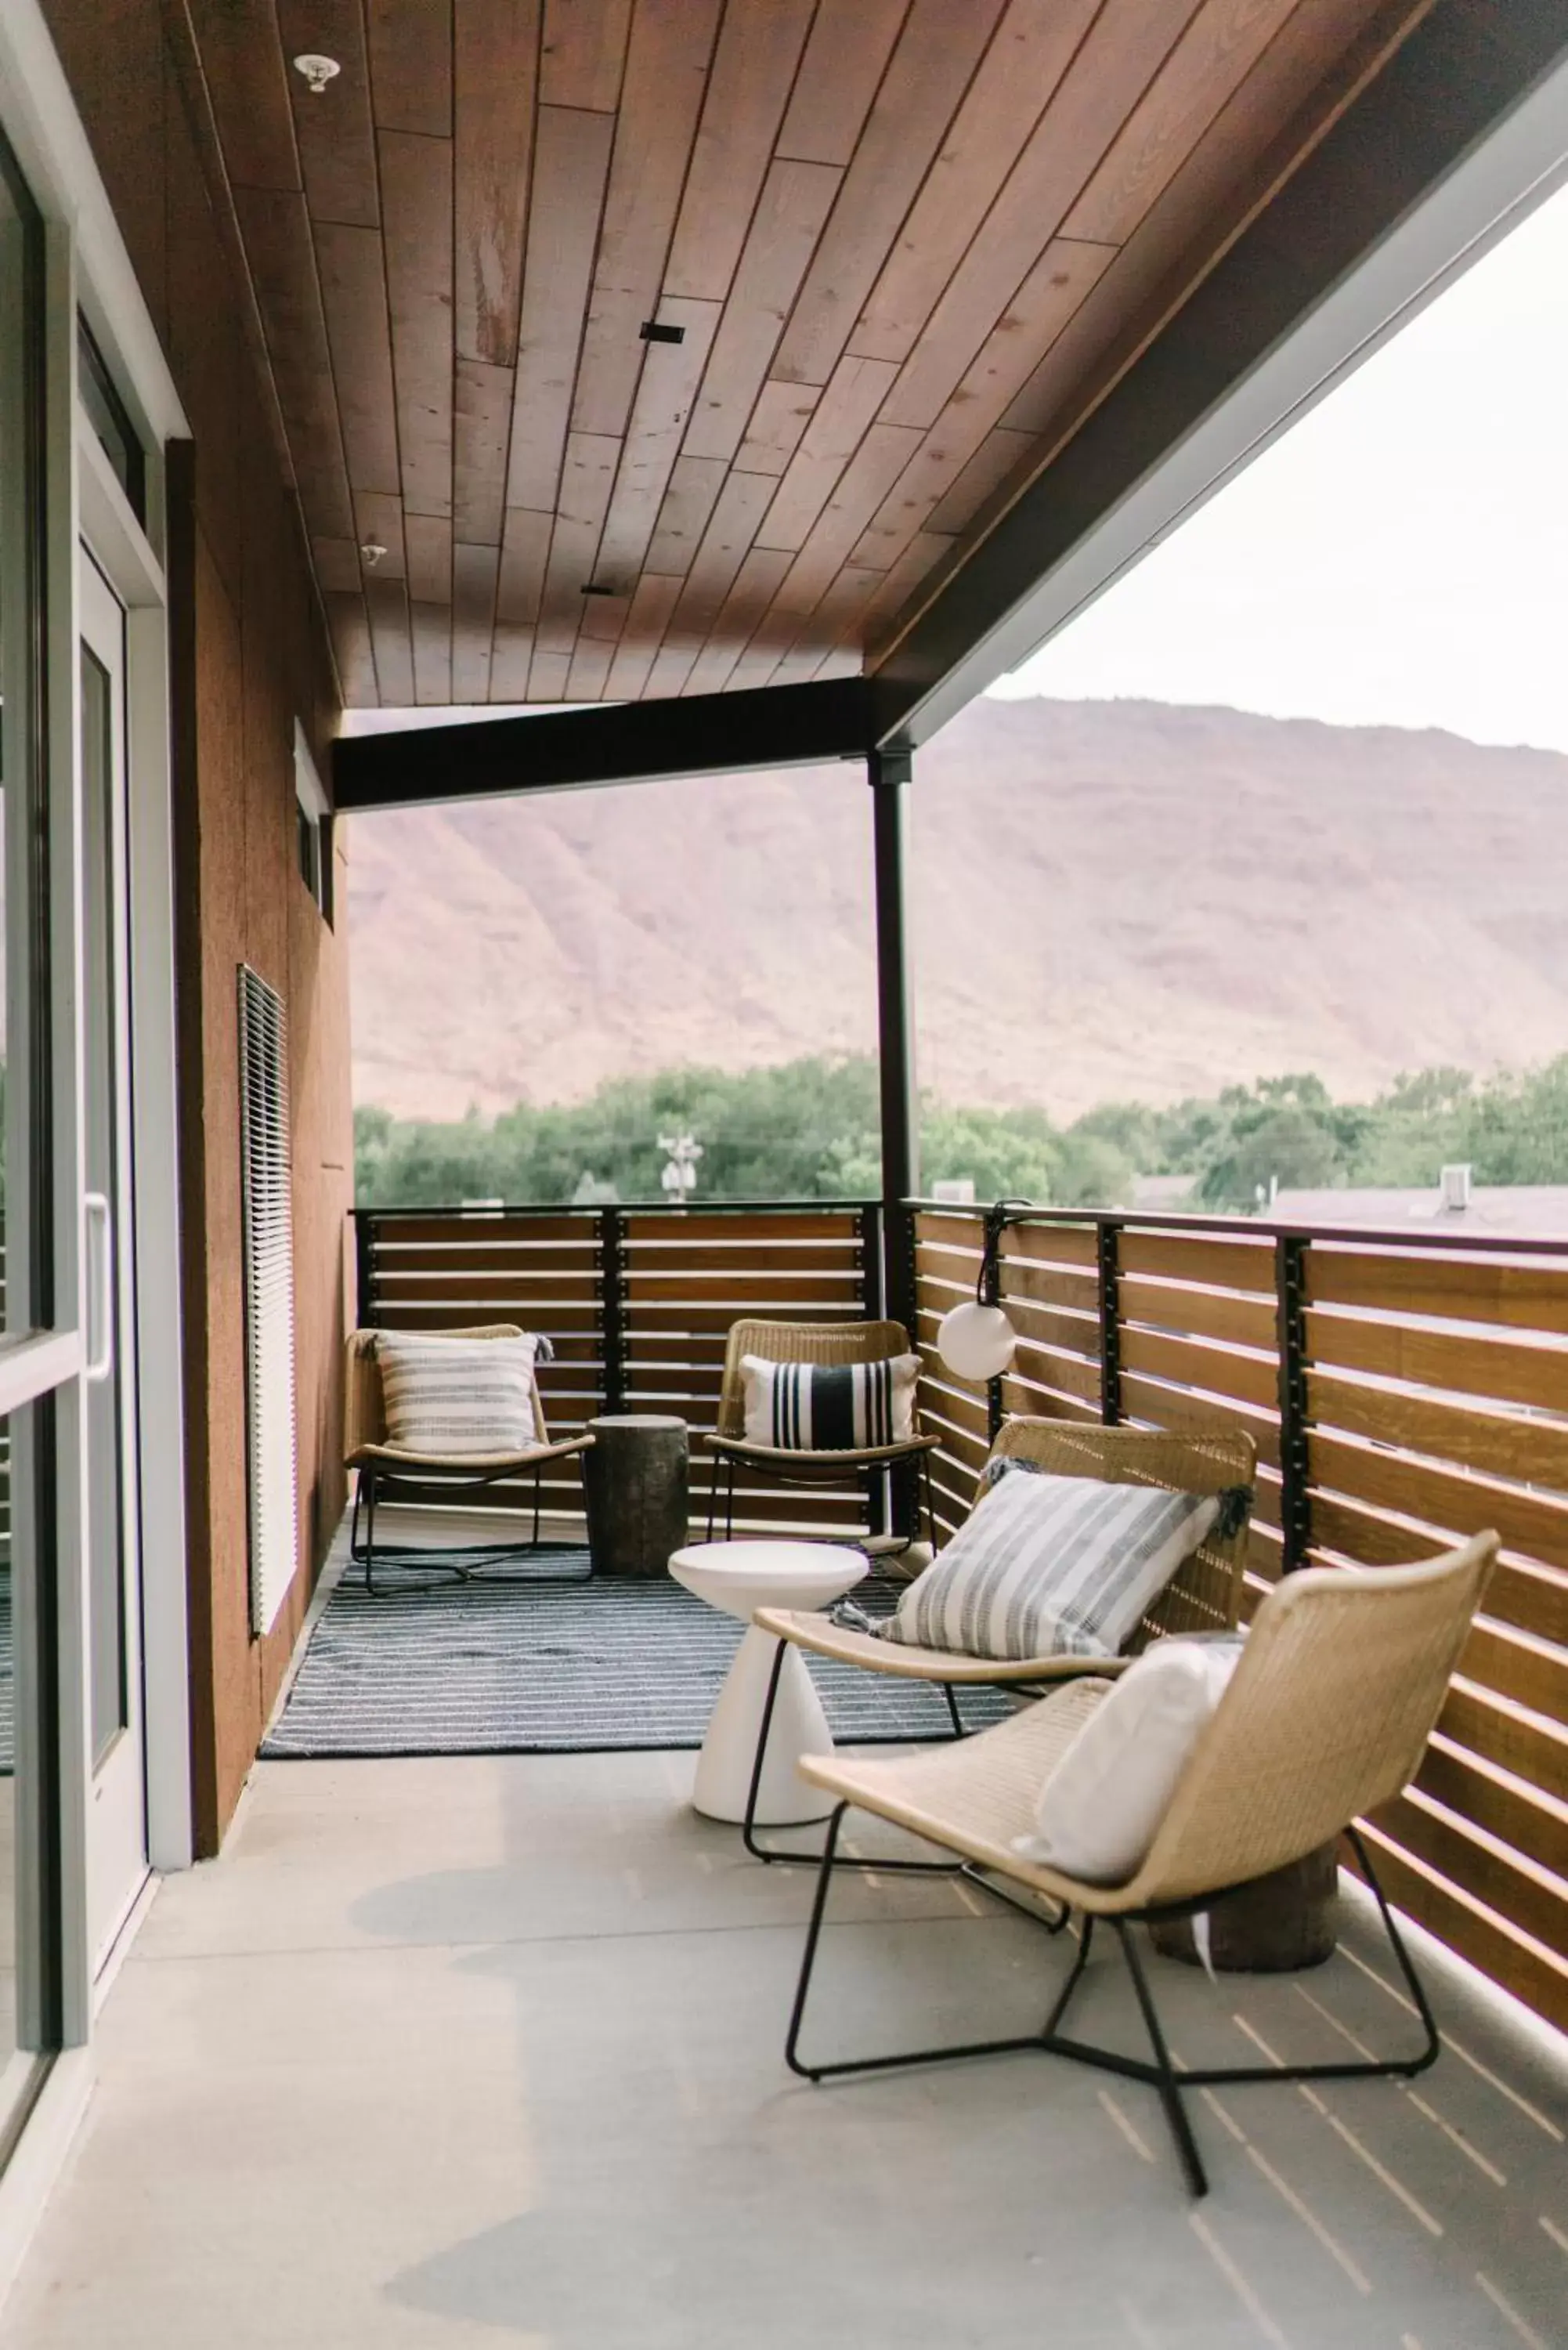 Balcony/Terrace in Gravity Haus Moab